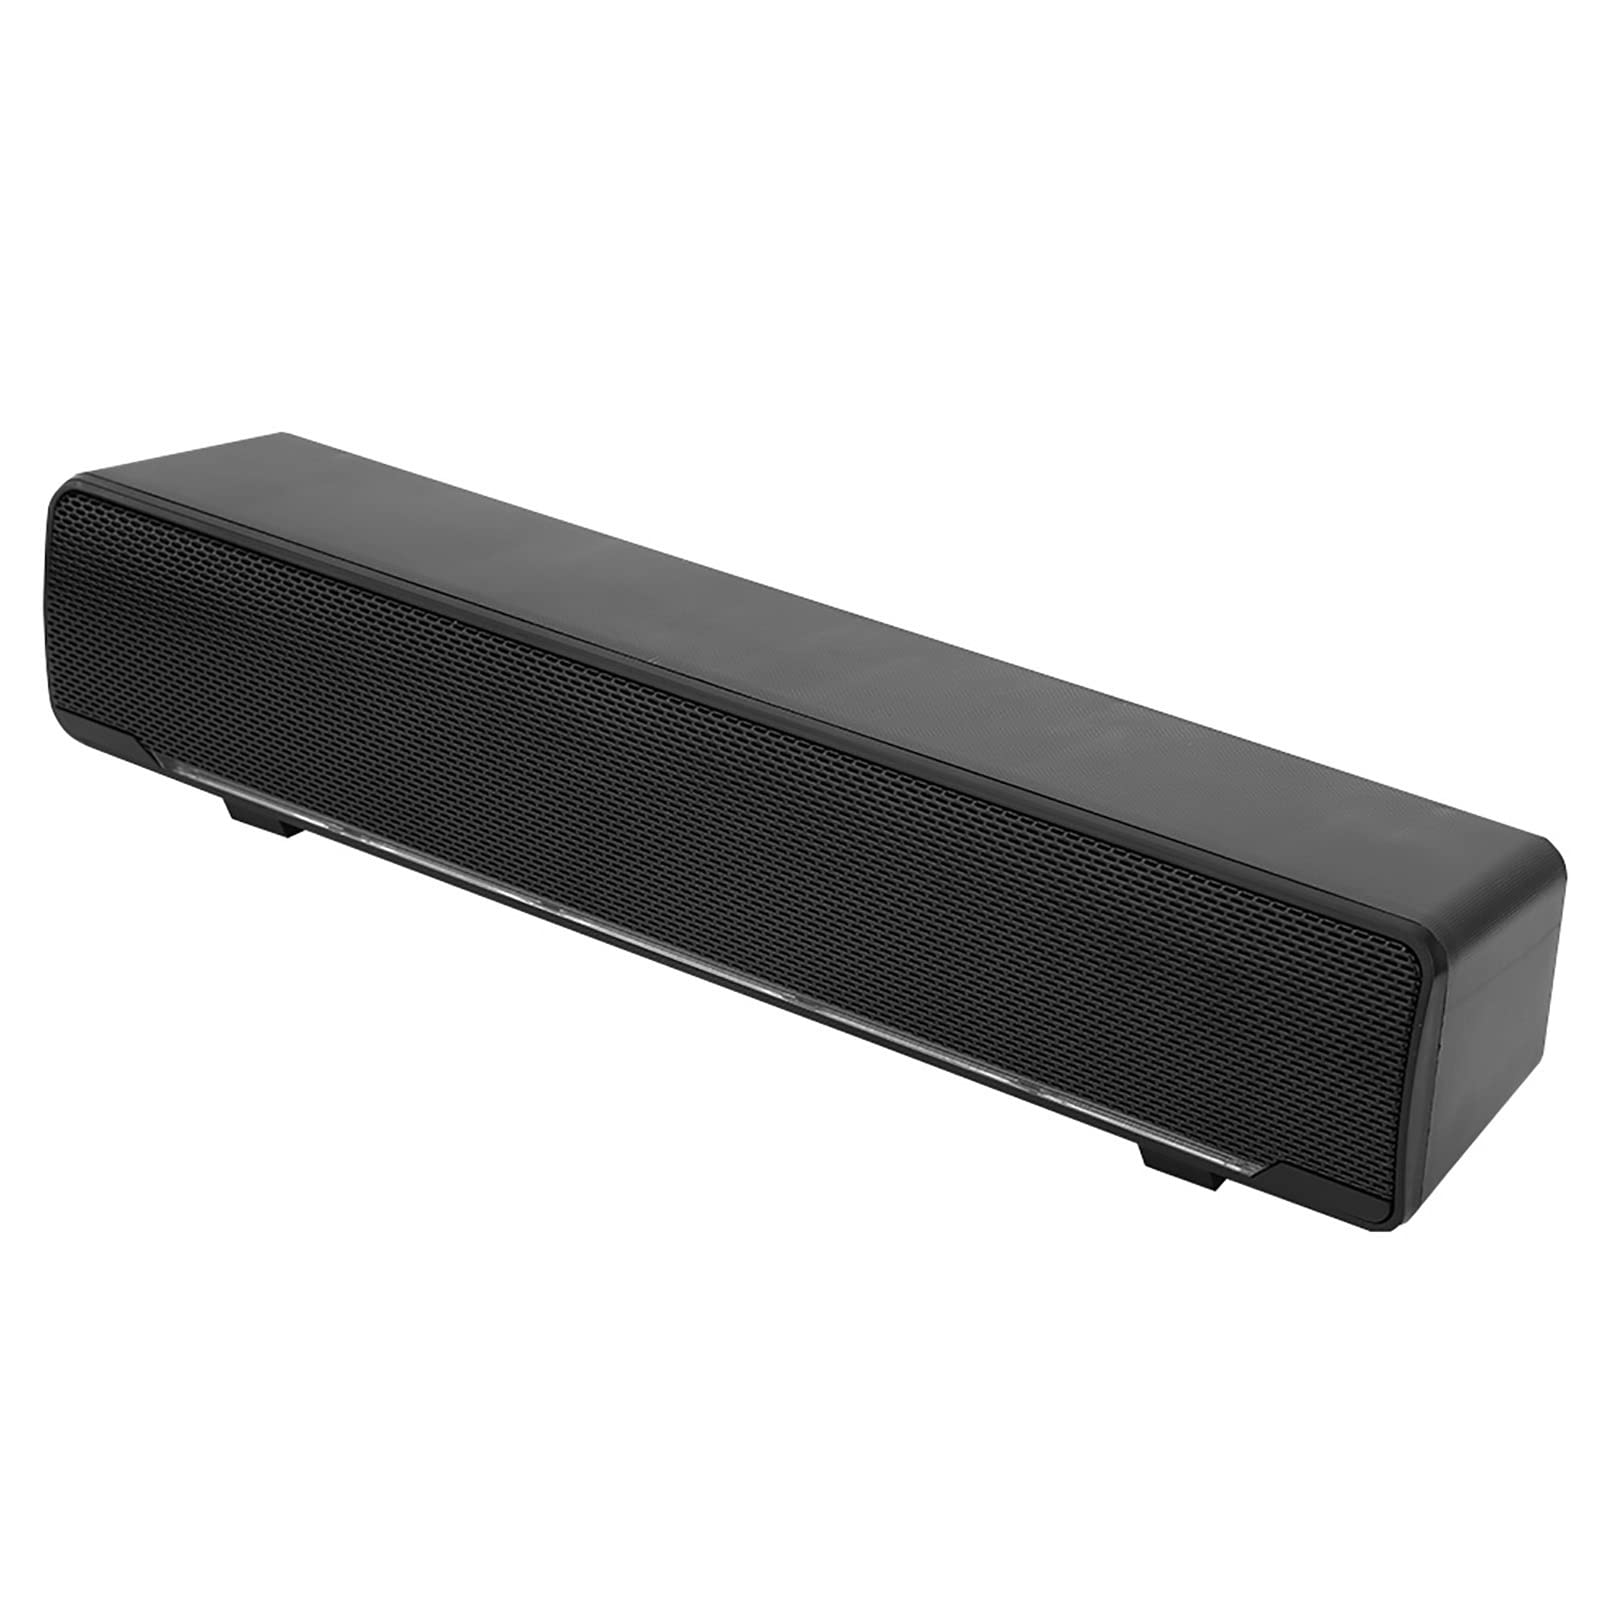 Tragbare Soundbar, Stereo Soundbar mit USB Kabel Musik Player, Bass Surround Soundbox mit 3.5 mm Audiostecker für PC, Mobiltelefone, Desktop, Laptop, Fernseher, Tablet MP3, MP4(Schwarz)